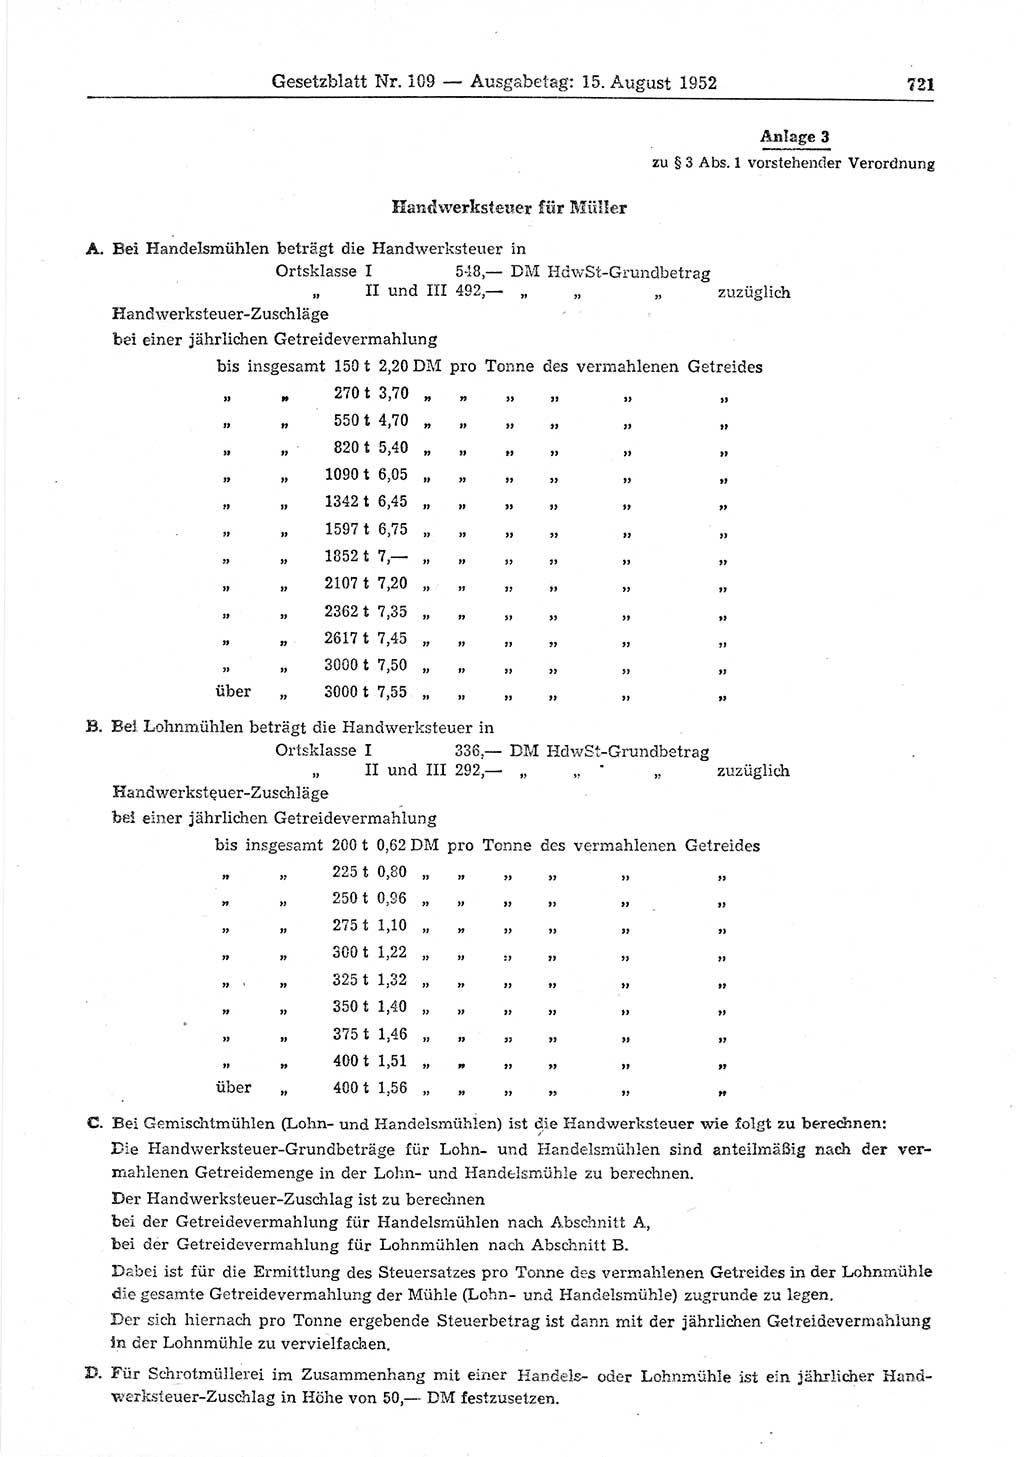 Gesetzblatt (GBl.) der Deutschen Demokratischen Republik (DDR) 1952, Seite 721 (GBl. DDR 1952, S. 721)